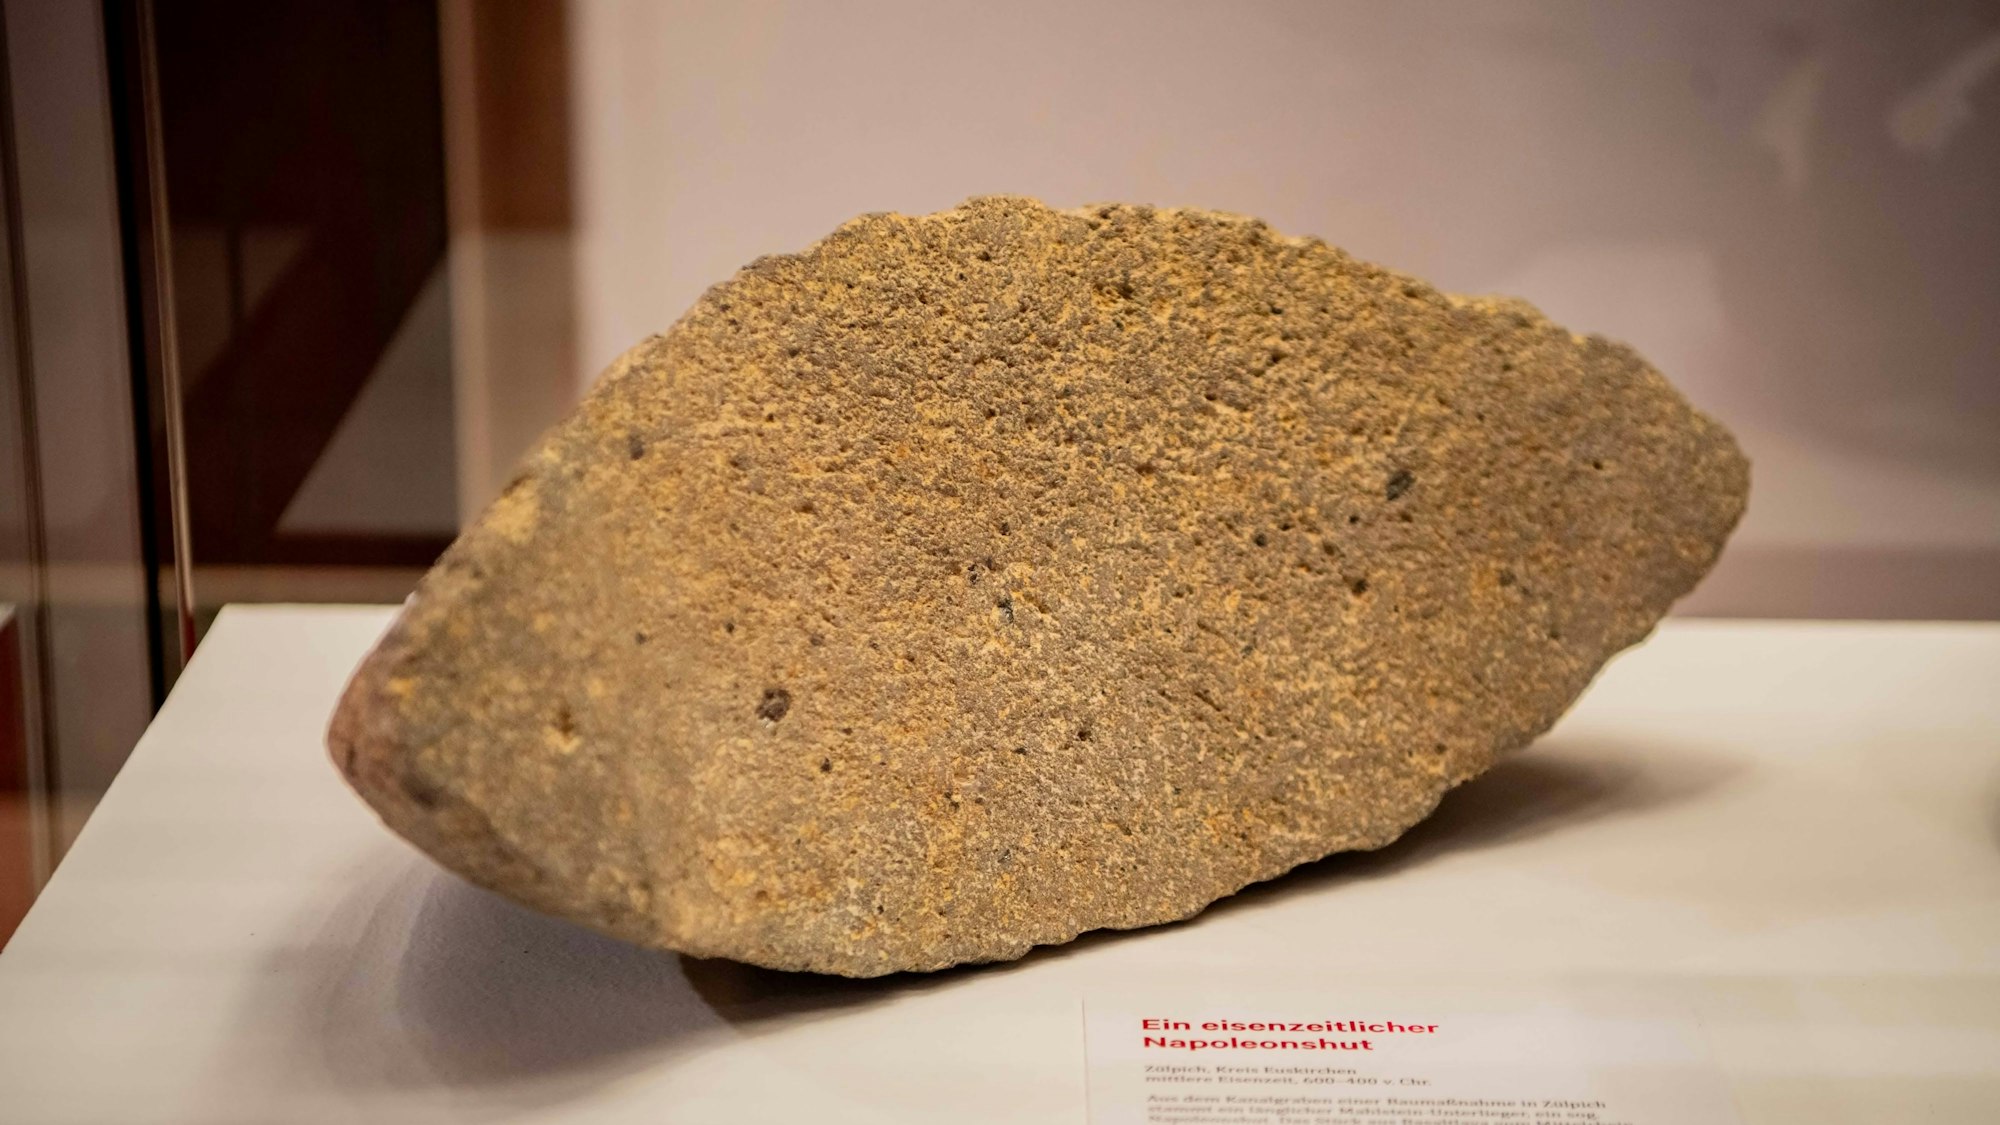 Das Bild zeigt einen alten Stein, der in der Eisenzeit zum Mahlen von Getreide genutzt wurde.